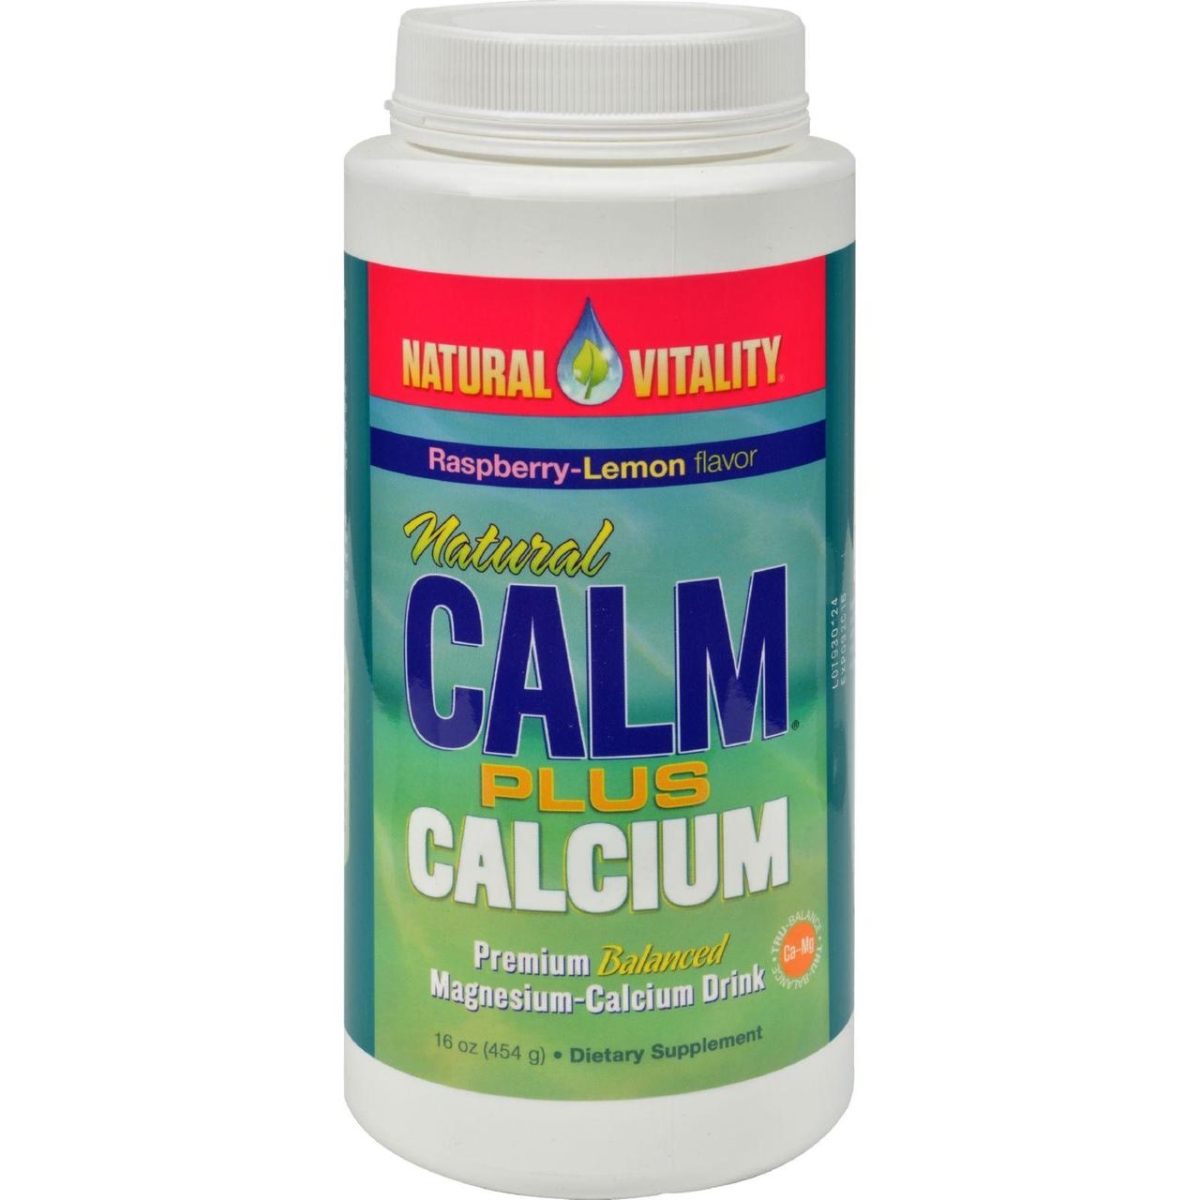 Hg0290932 16 Oz Natural Calm Plus Calcium Raspberry-lemon